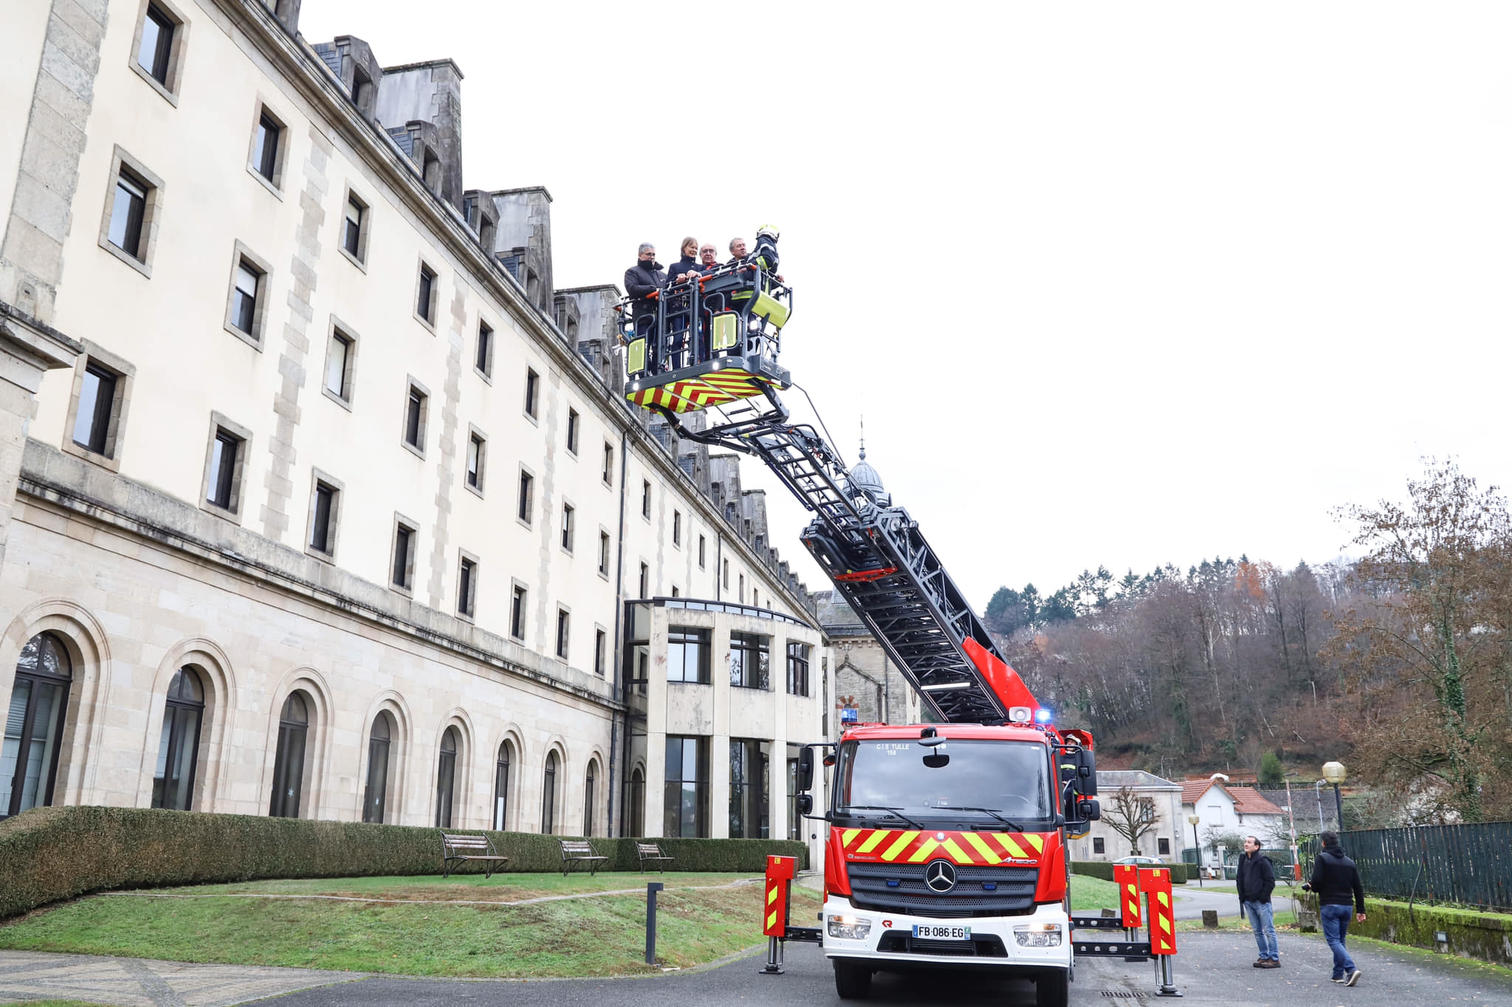 Les pompiers de Corrèze changent le rouge de certains de leurs